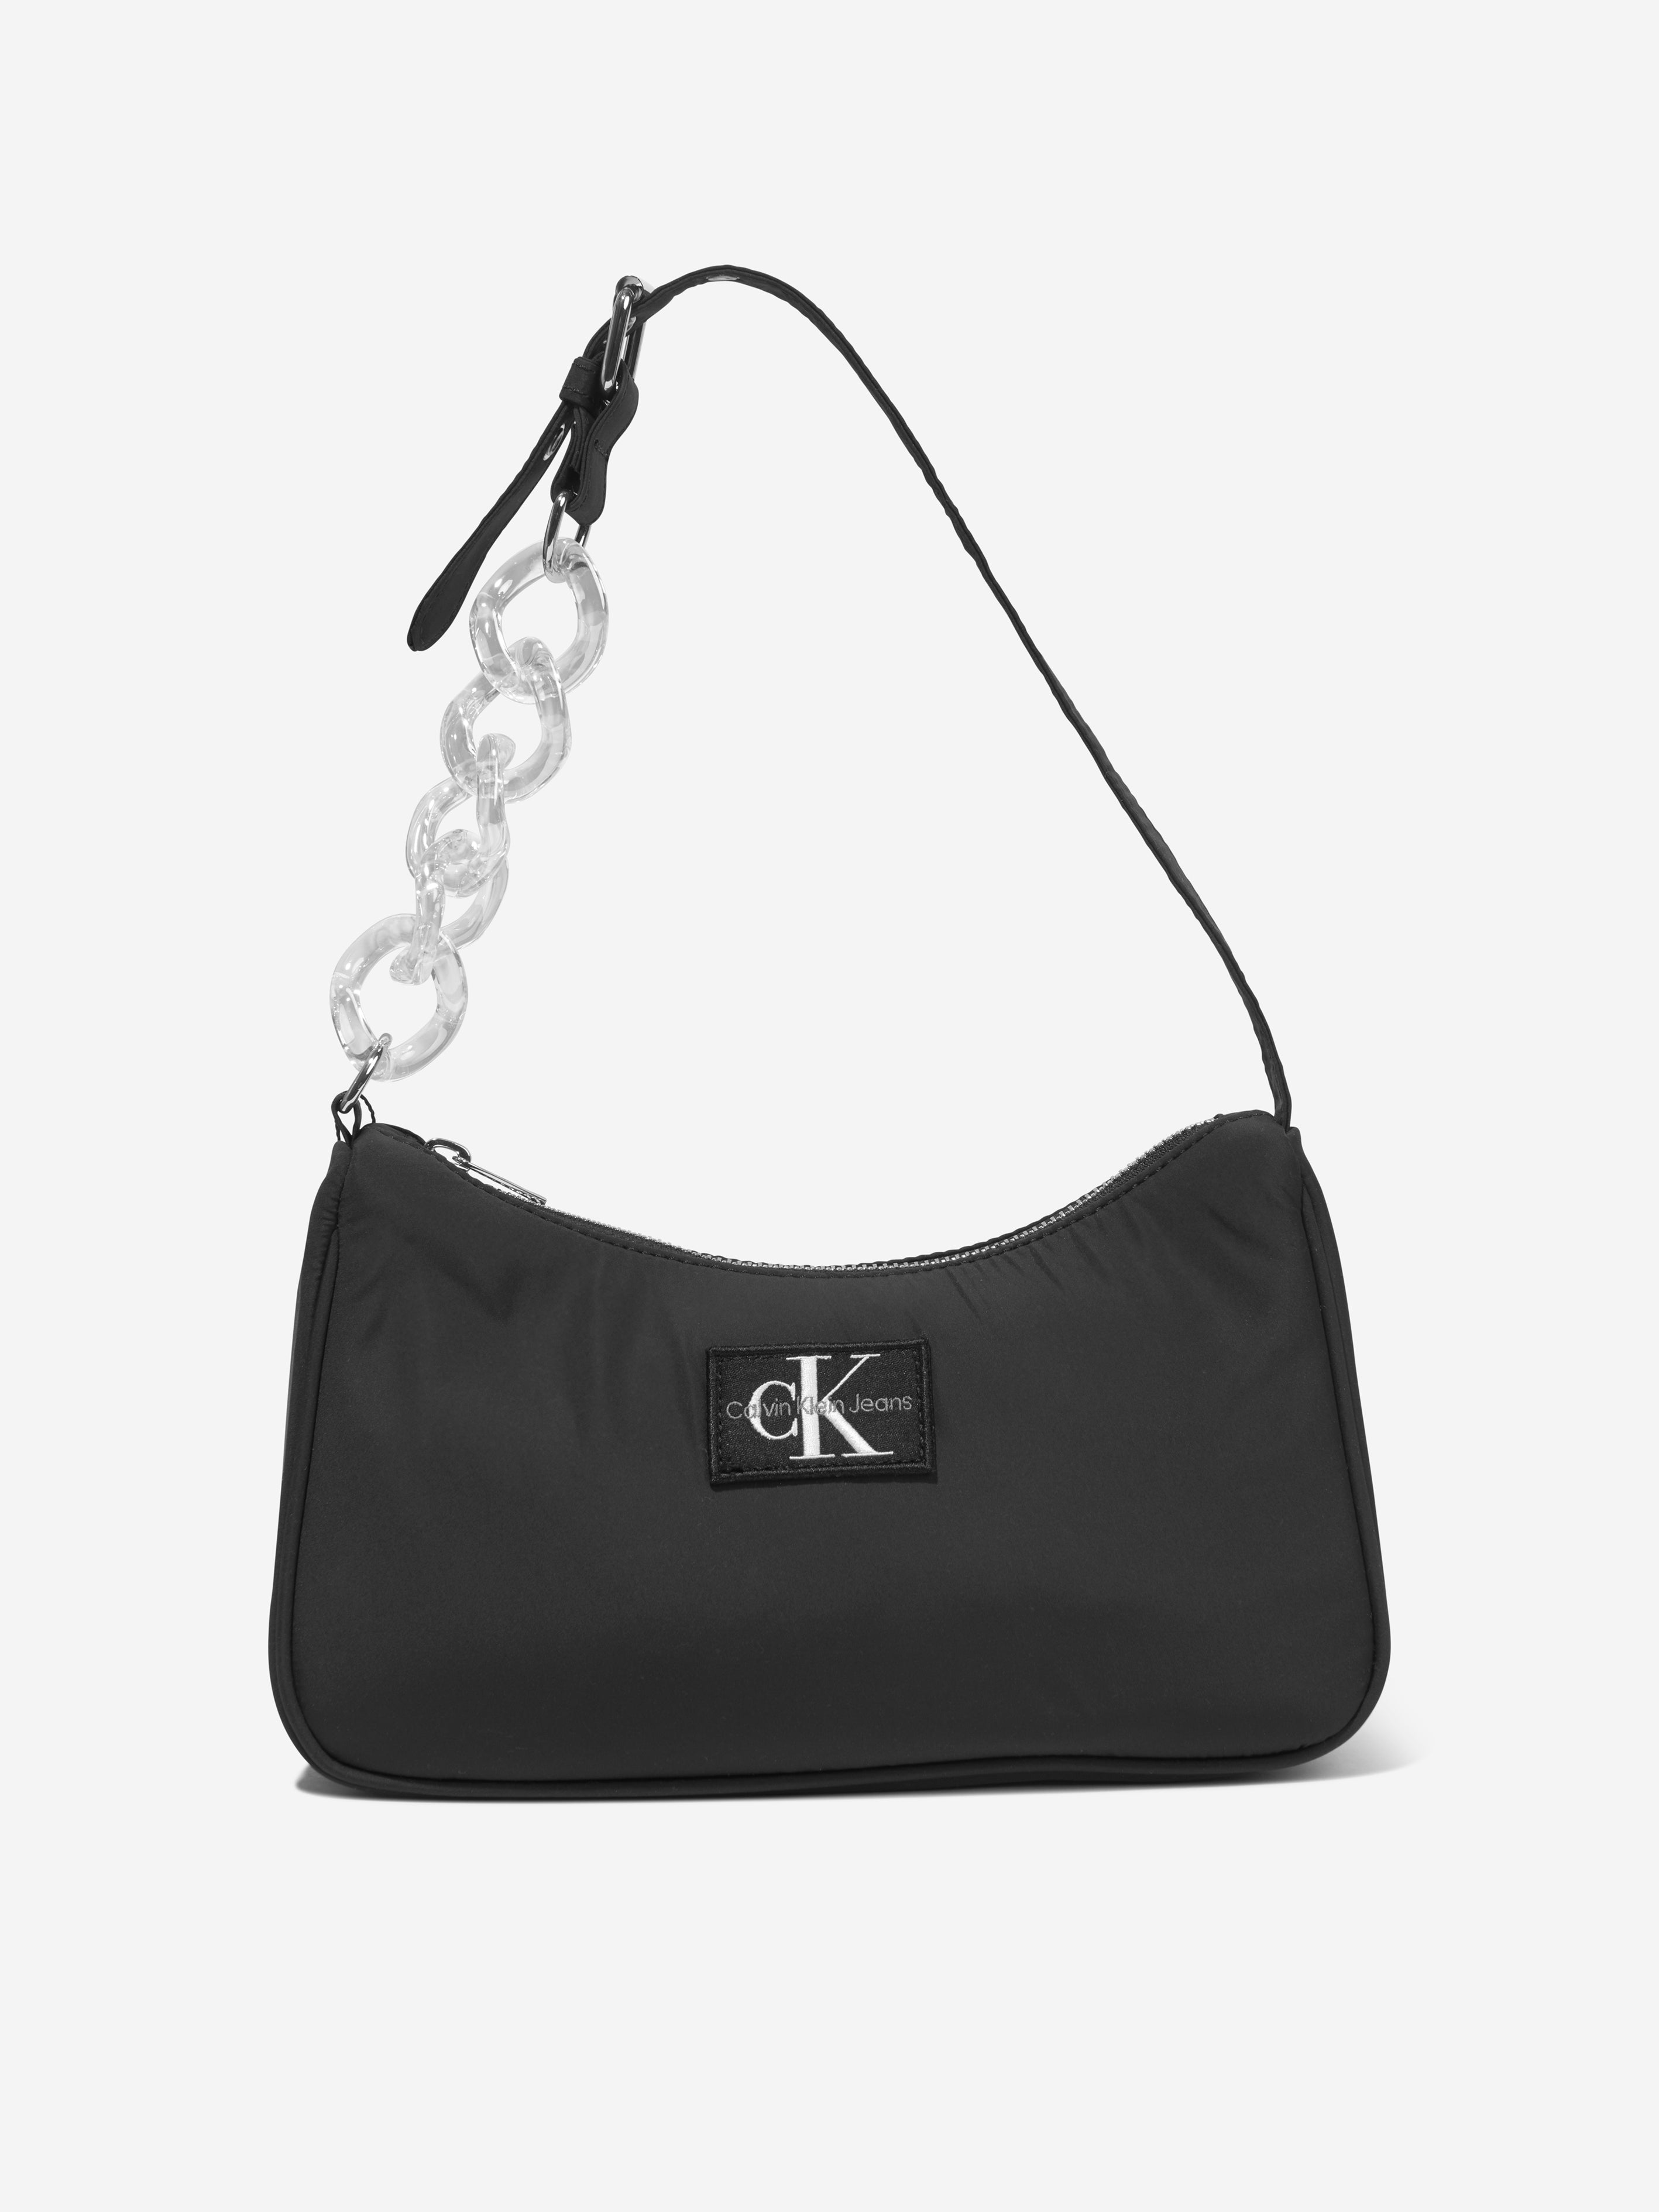 Girls Chain Shoulder Bag in Black